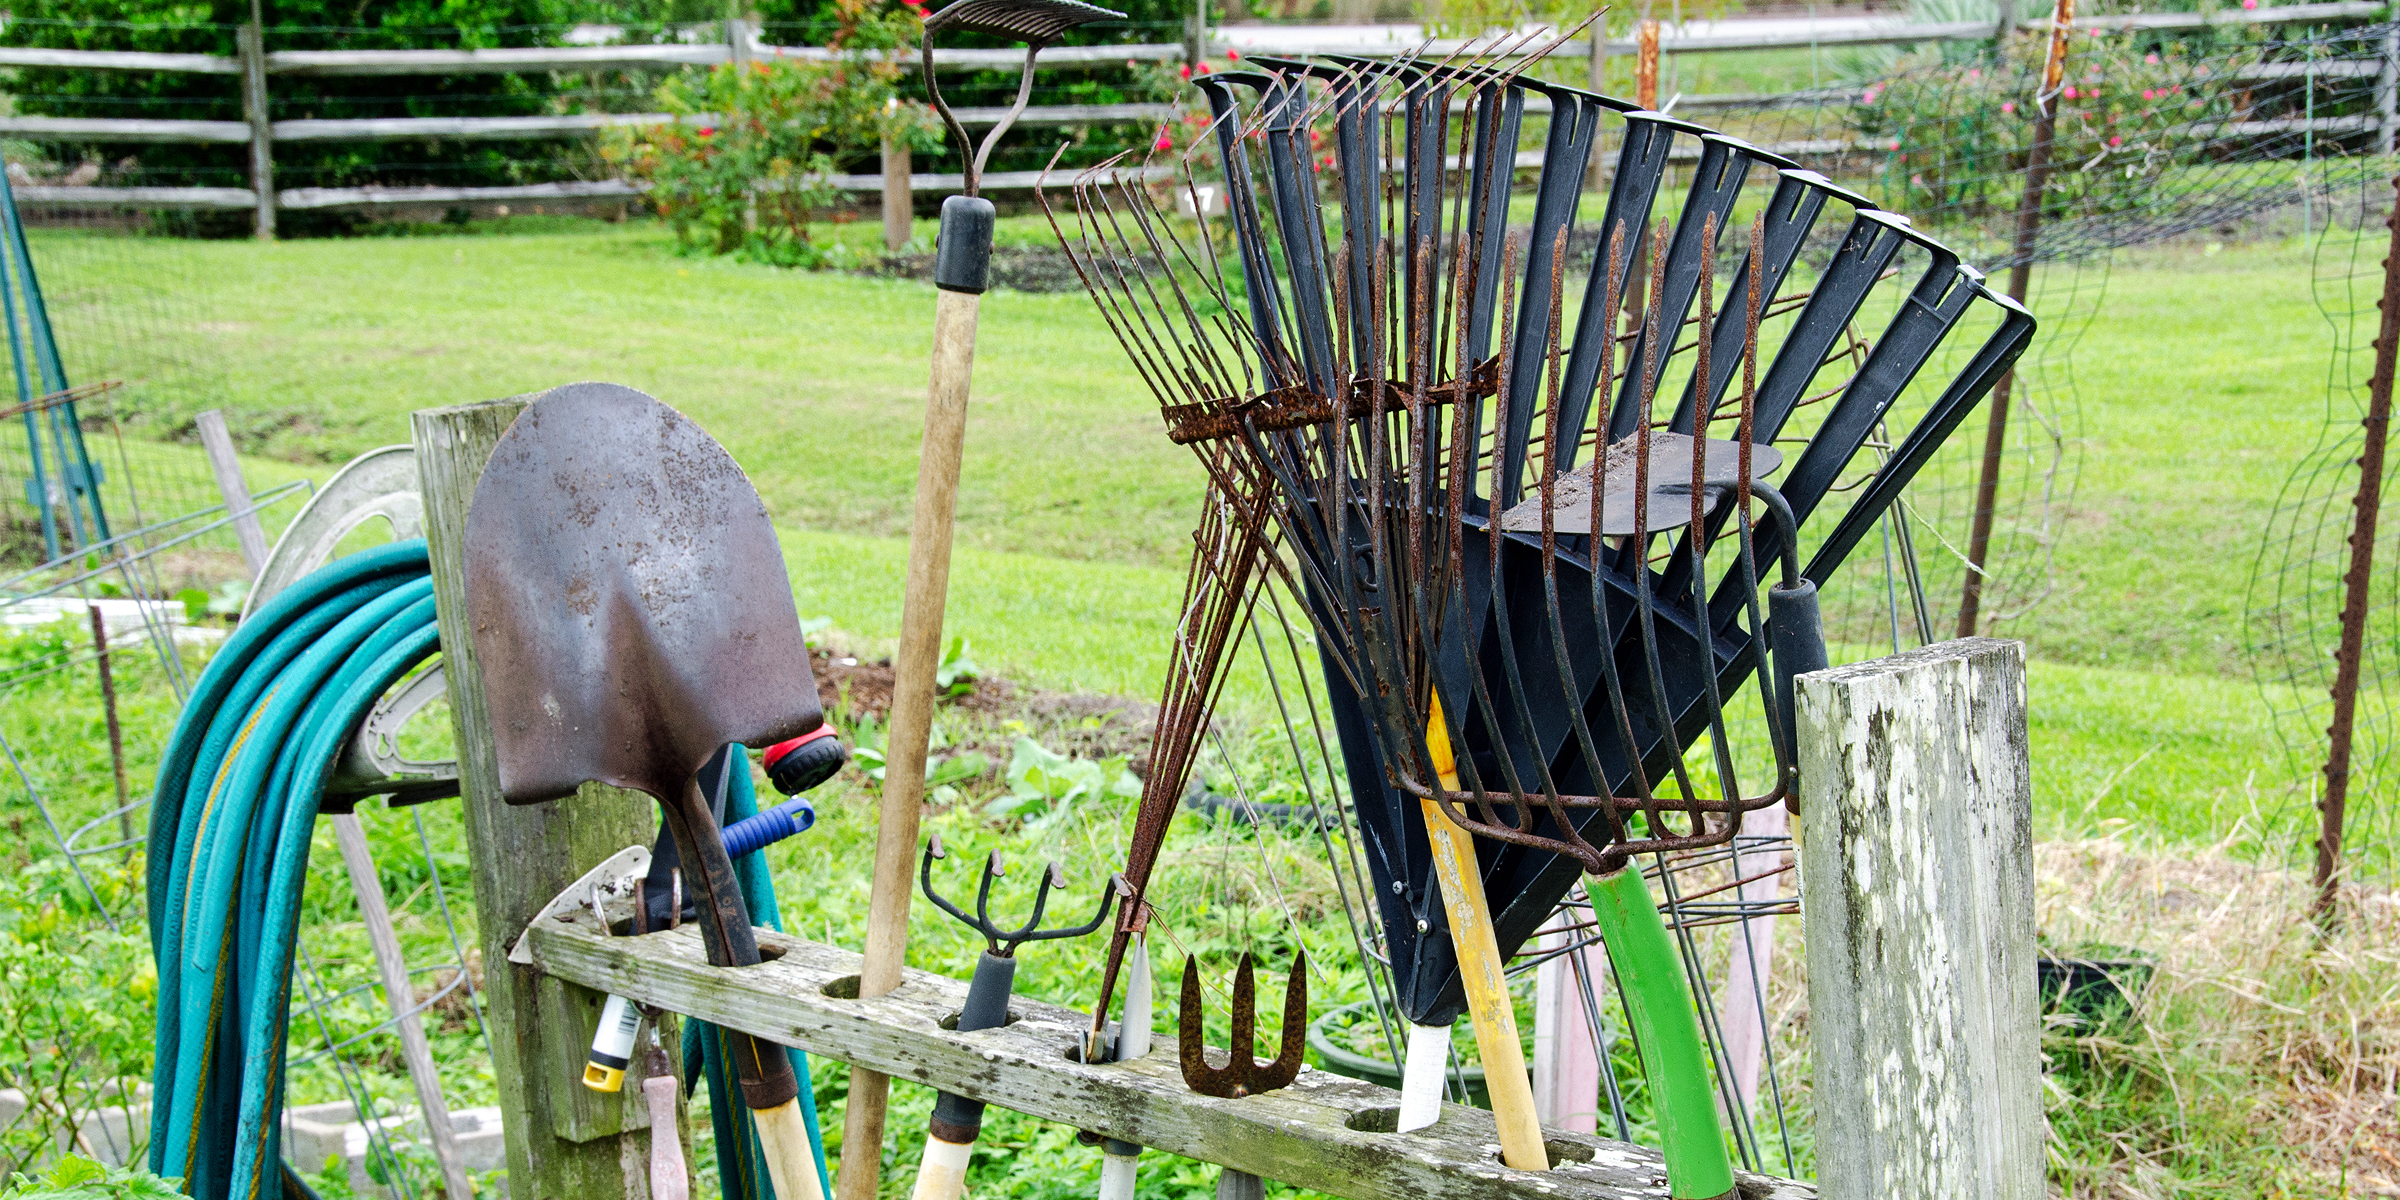 Freestanding garden tool rack | Source: Getty Images